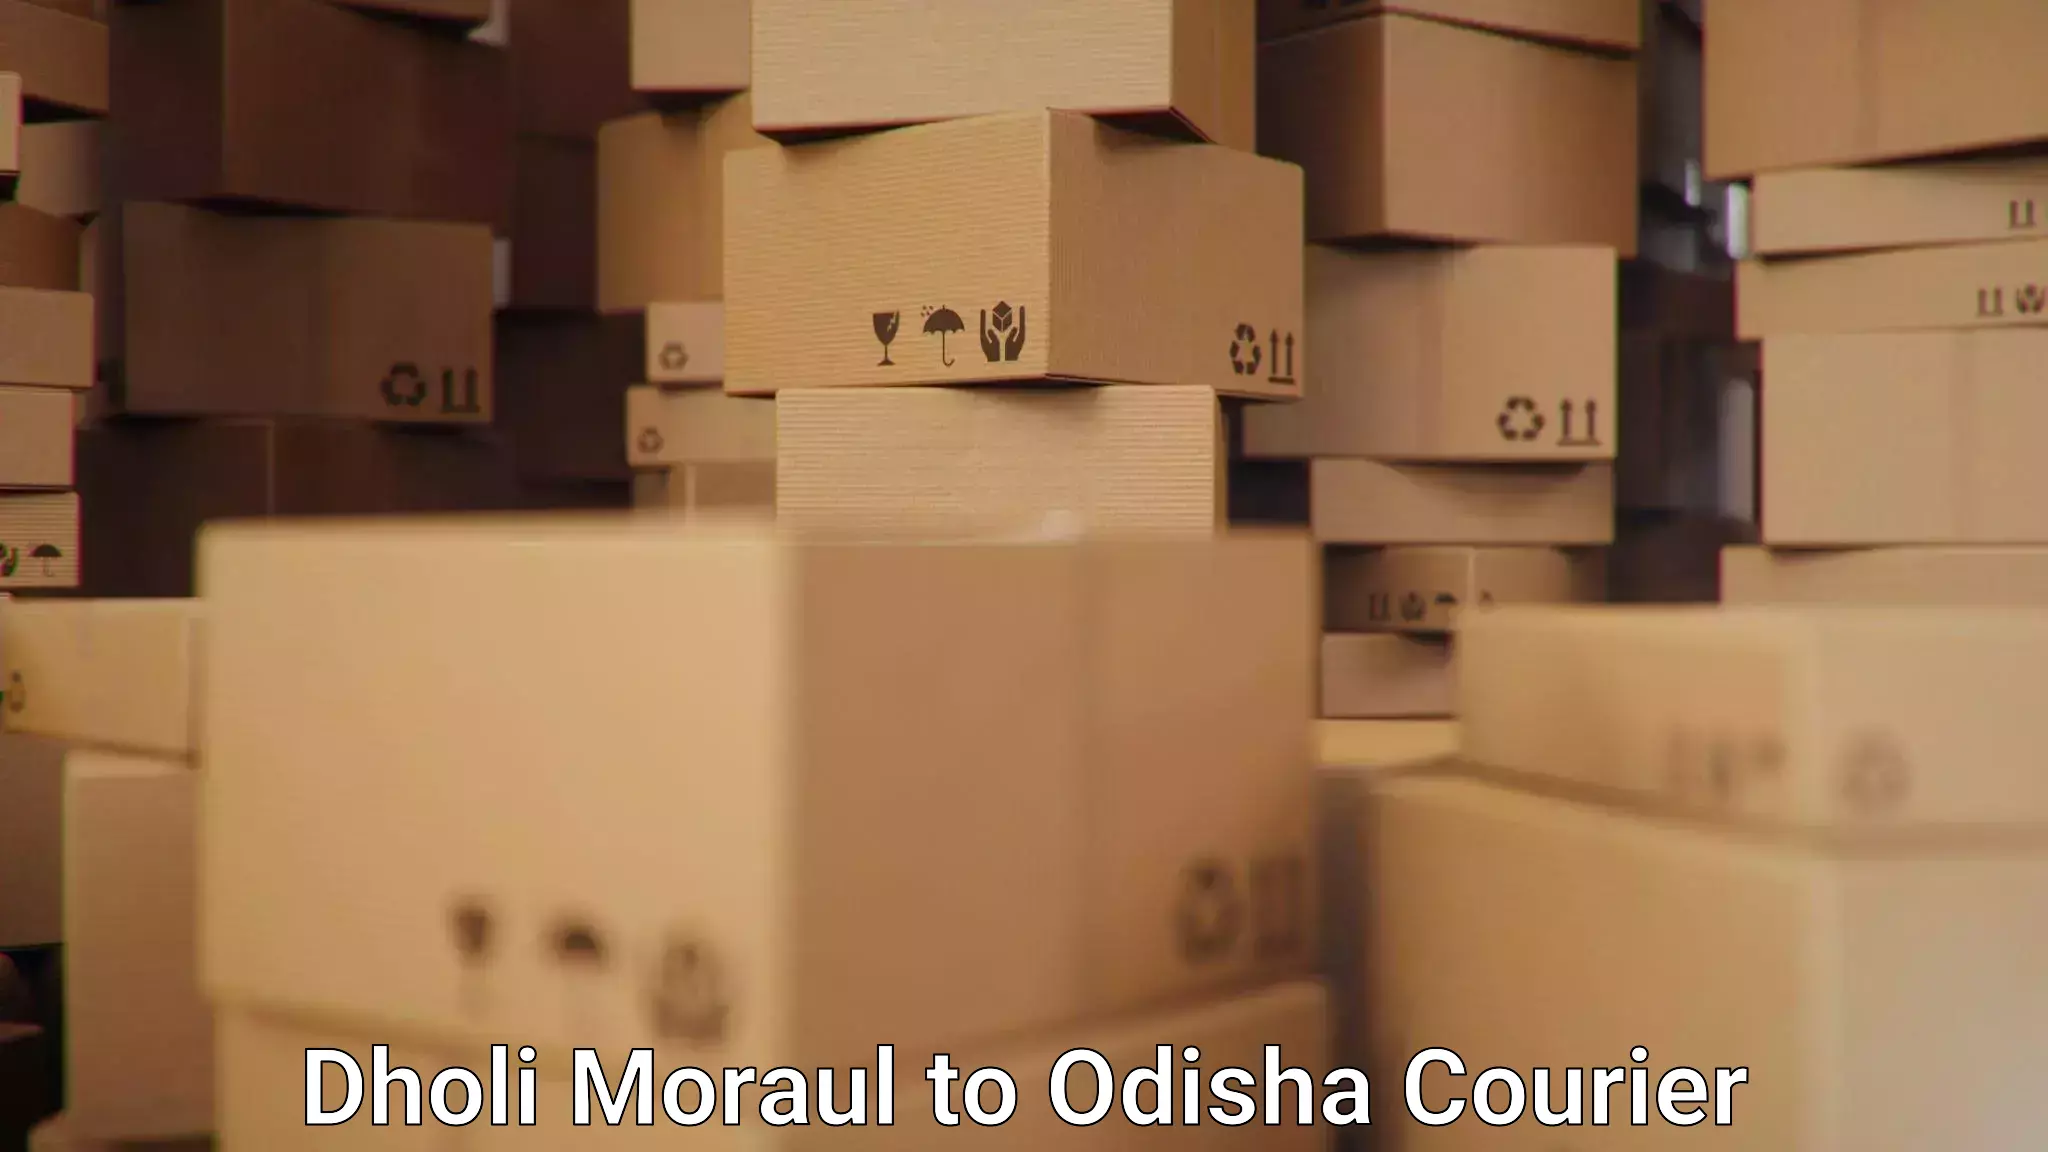 Comprehensive shipping services Dholi Moraul to Odisha